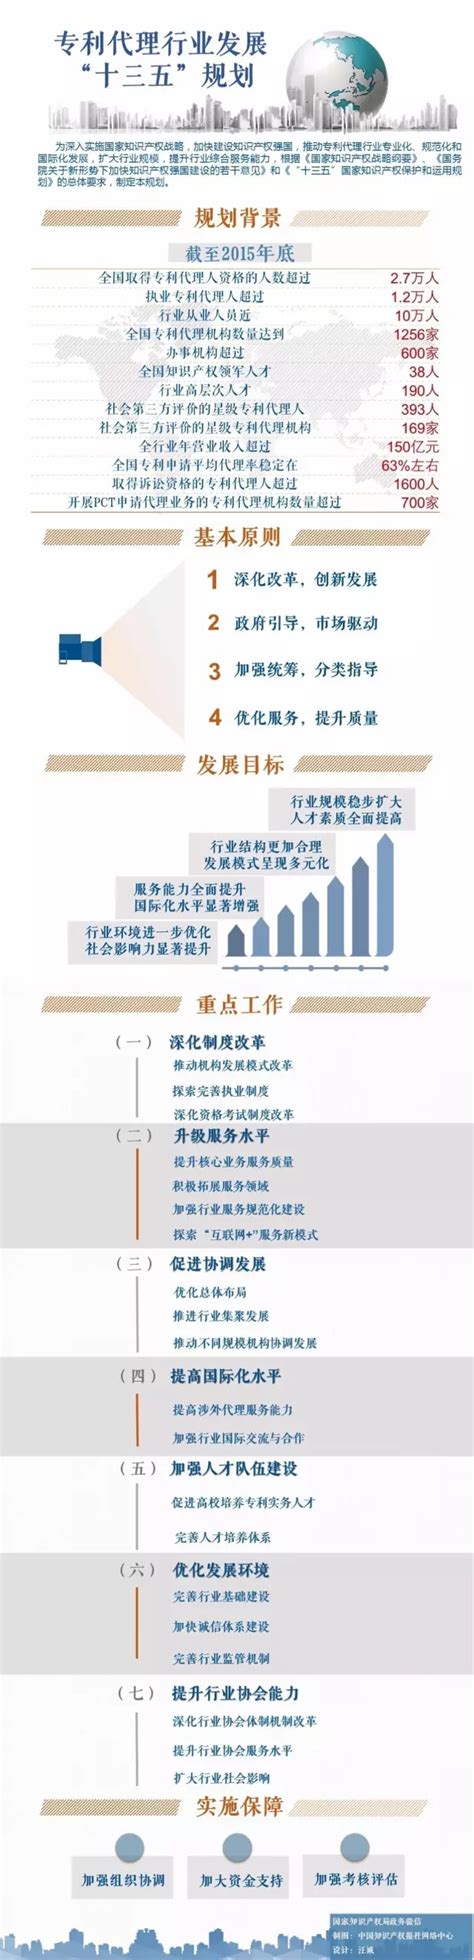 专利代理市场分析报告_2020-2026年中国专利代理行业深度调研与行业前景预测报告_中国产业研究报告网